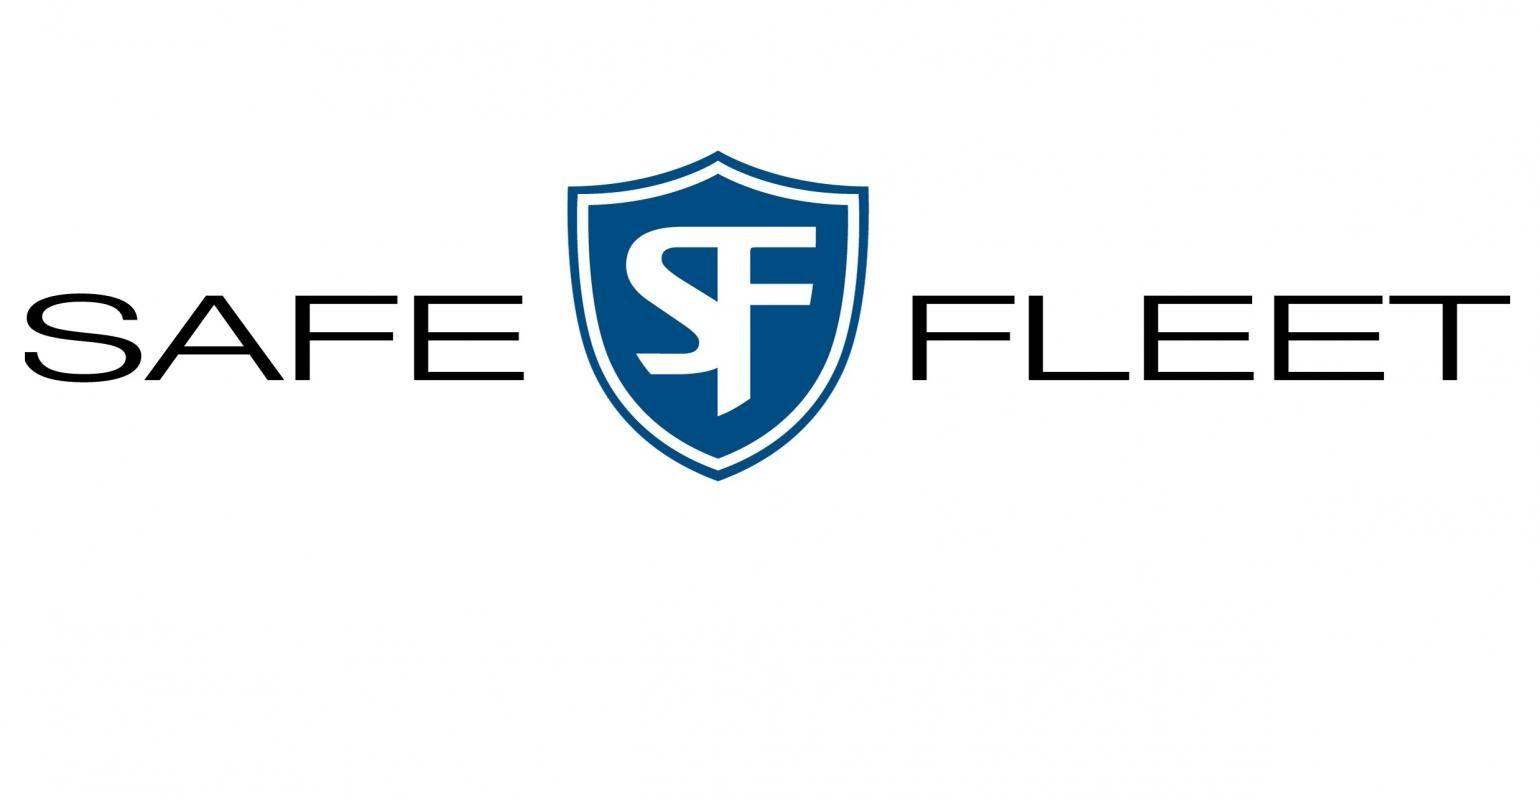 Fleet Logo - Safe Fleet To Acquire American Van In 'game Changing' Deal